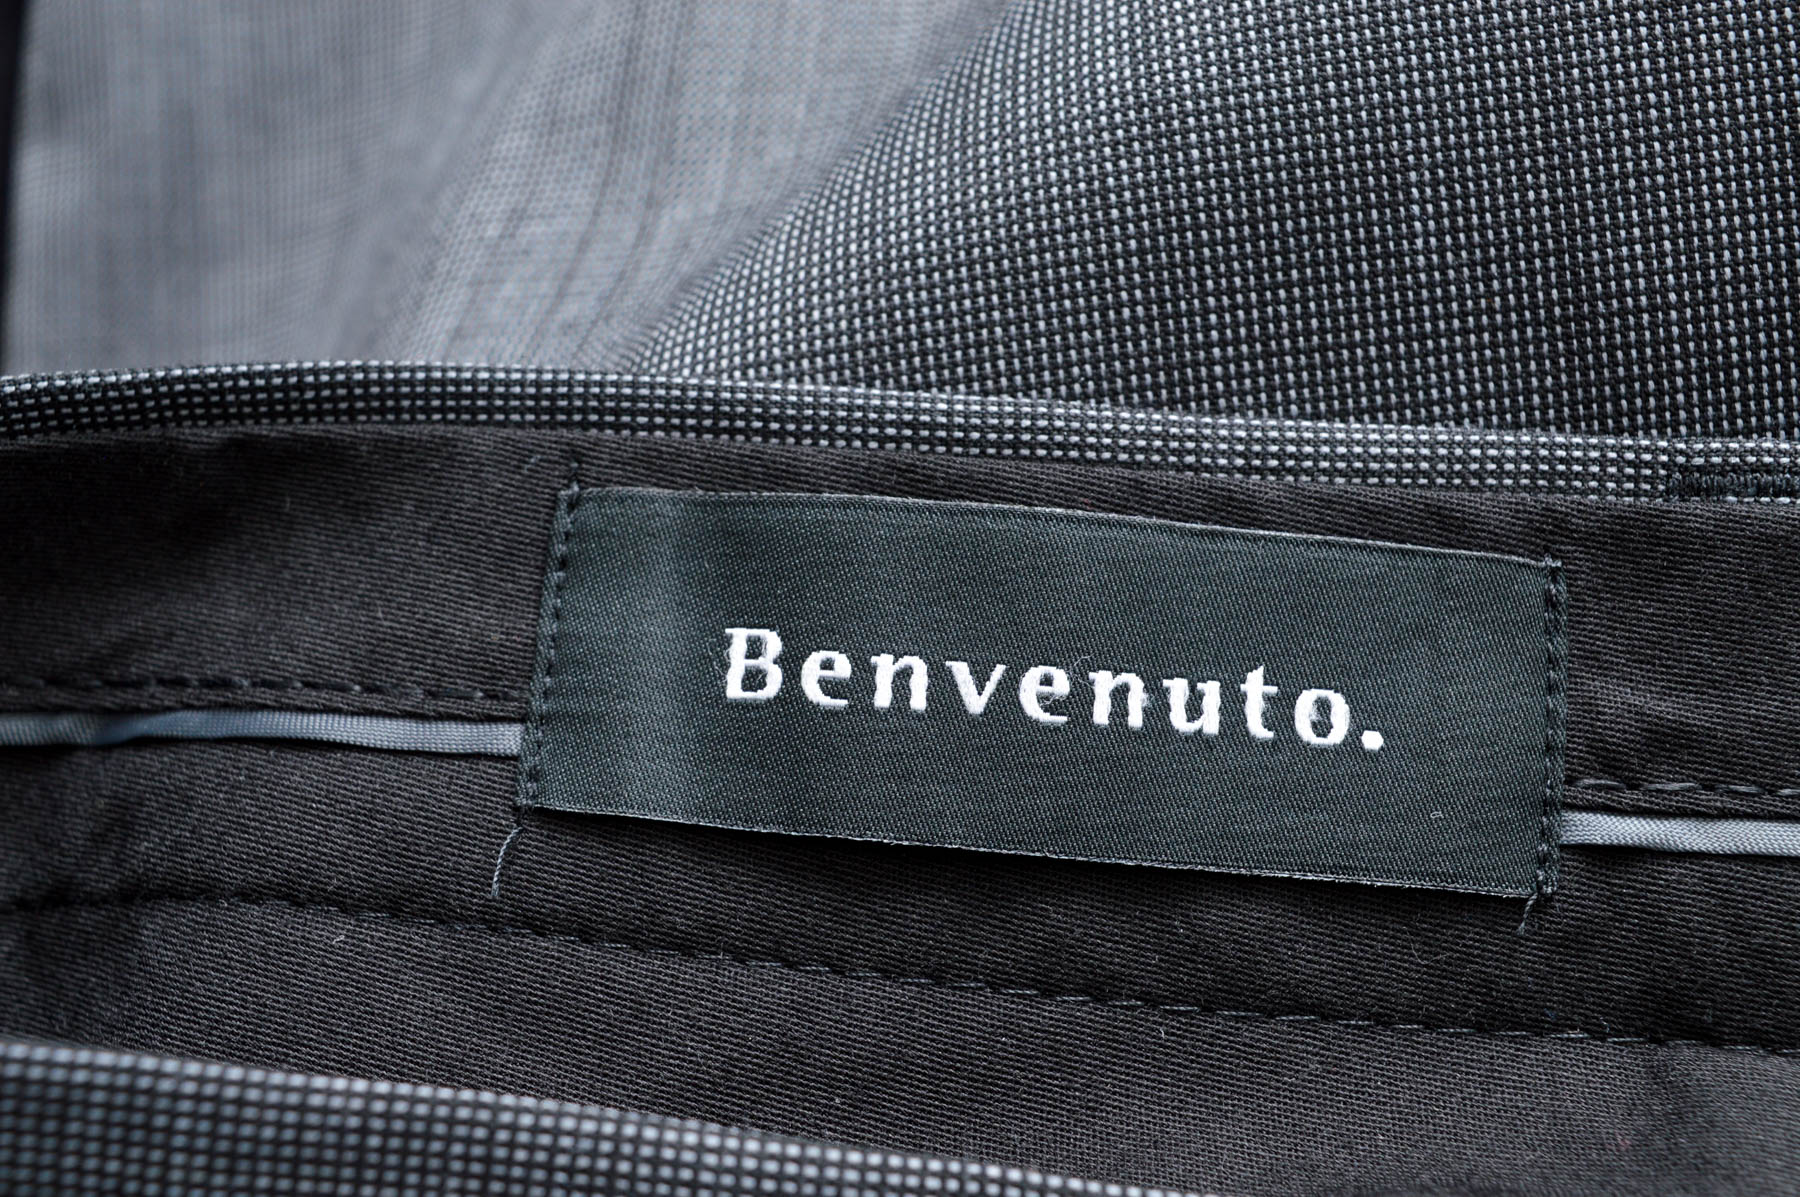 Pantalon pentru bărbați - Benvenuto. - 2